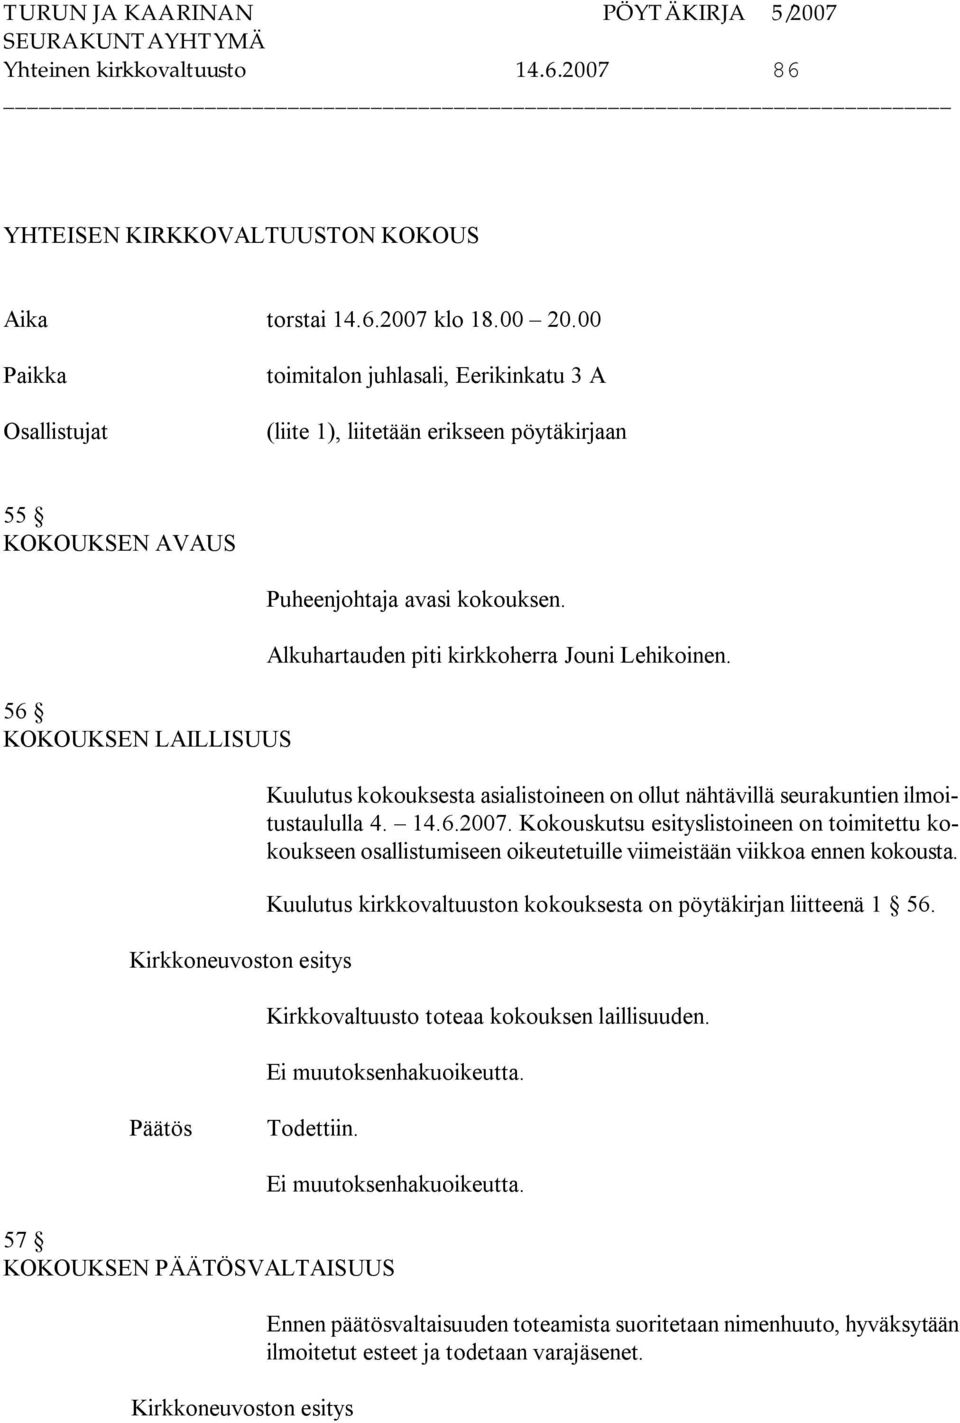 Alkuhartauden piti kirkkoherra Jouni Lehikoinen. Kuulutus kokouksesta asialistoineen on ollut nähtävillä seurakuntien ilmoitustaululla 4. 14.6.2007.